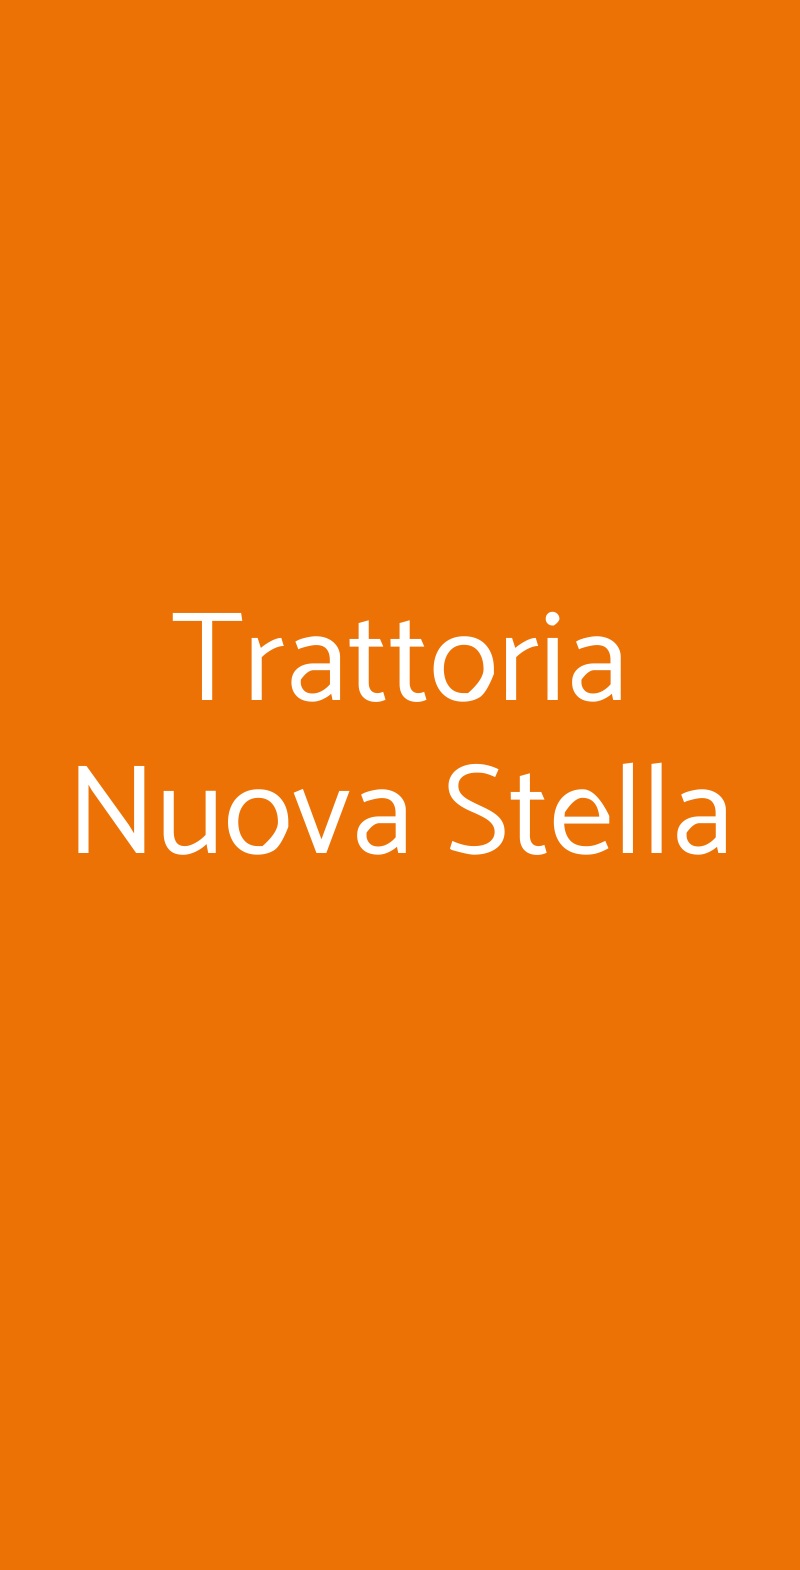 Trattoria Nuova Stella Roma menù 1 pagina